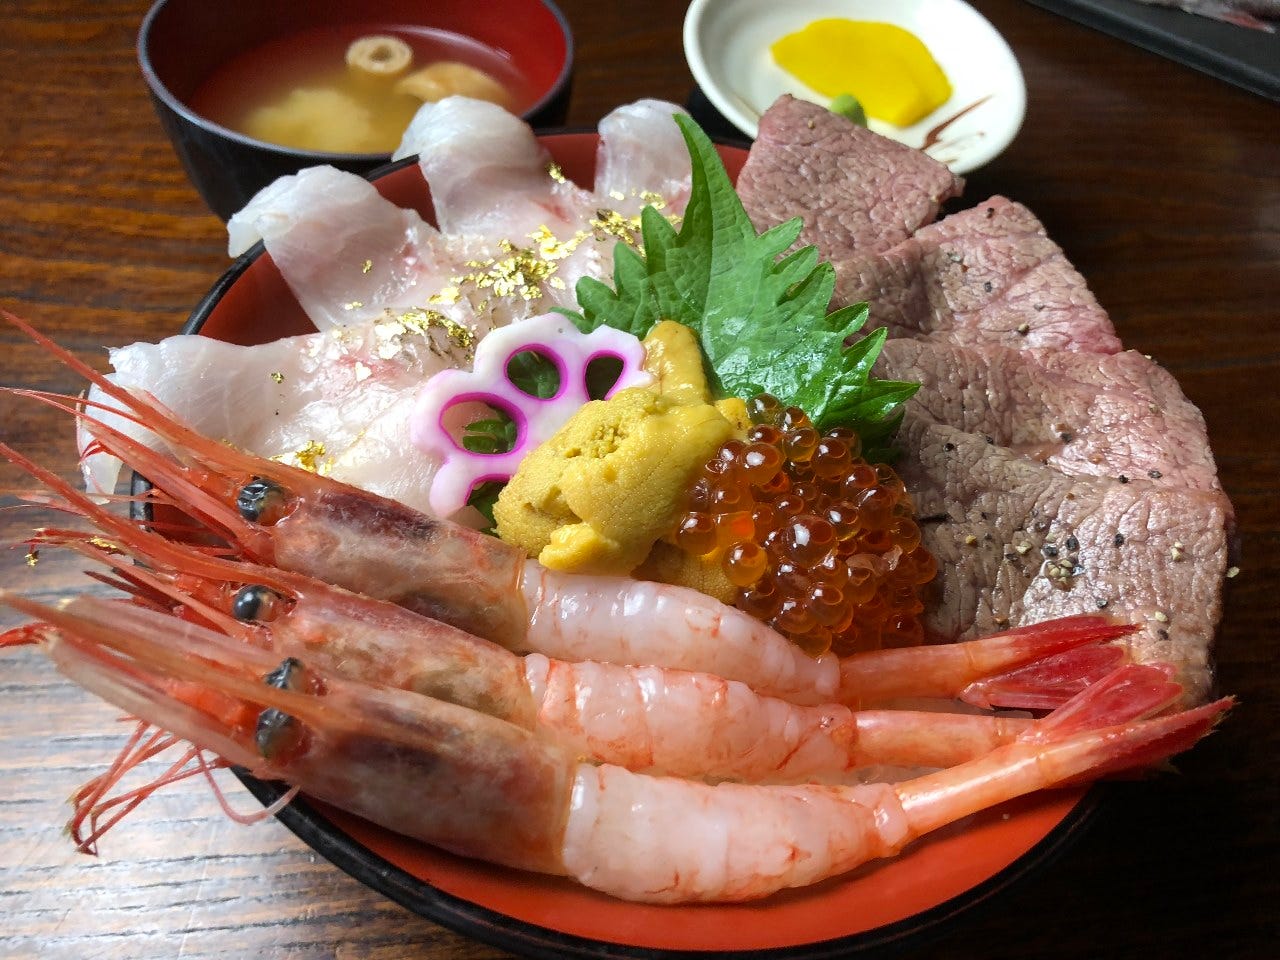 テーブルの上に丼に盛られた刺身屋の「海鮮牛丼」とみそ汁、たくあんが置かれている